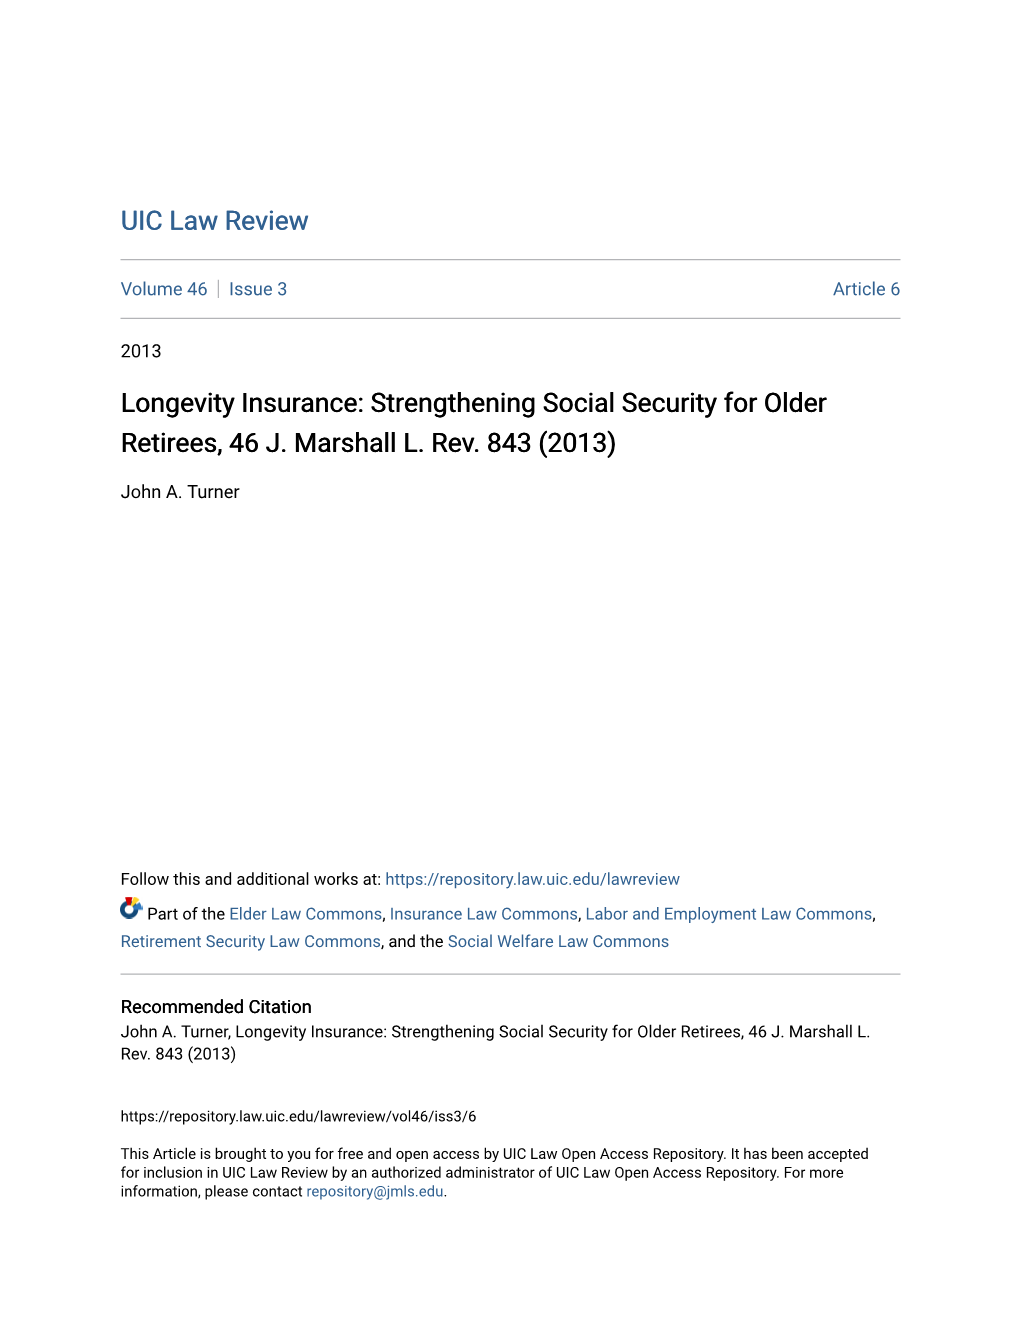 Longevity Insurance: Strengthening Social Security for Older Retirees, 46 J